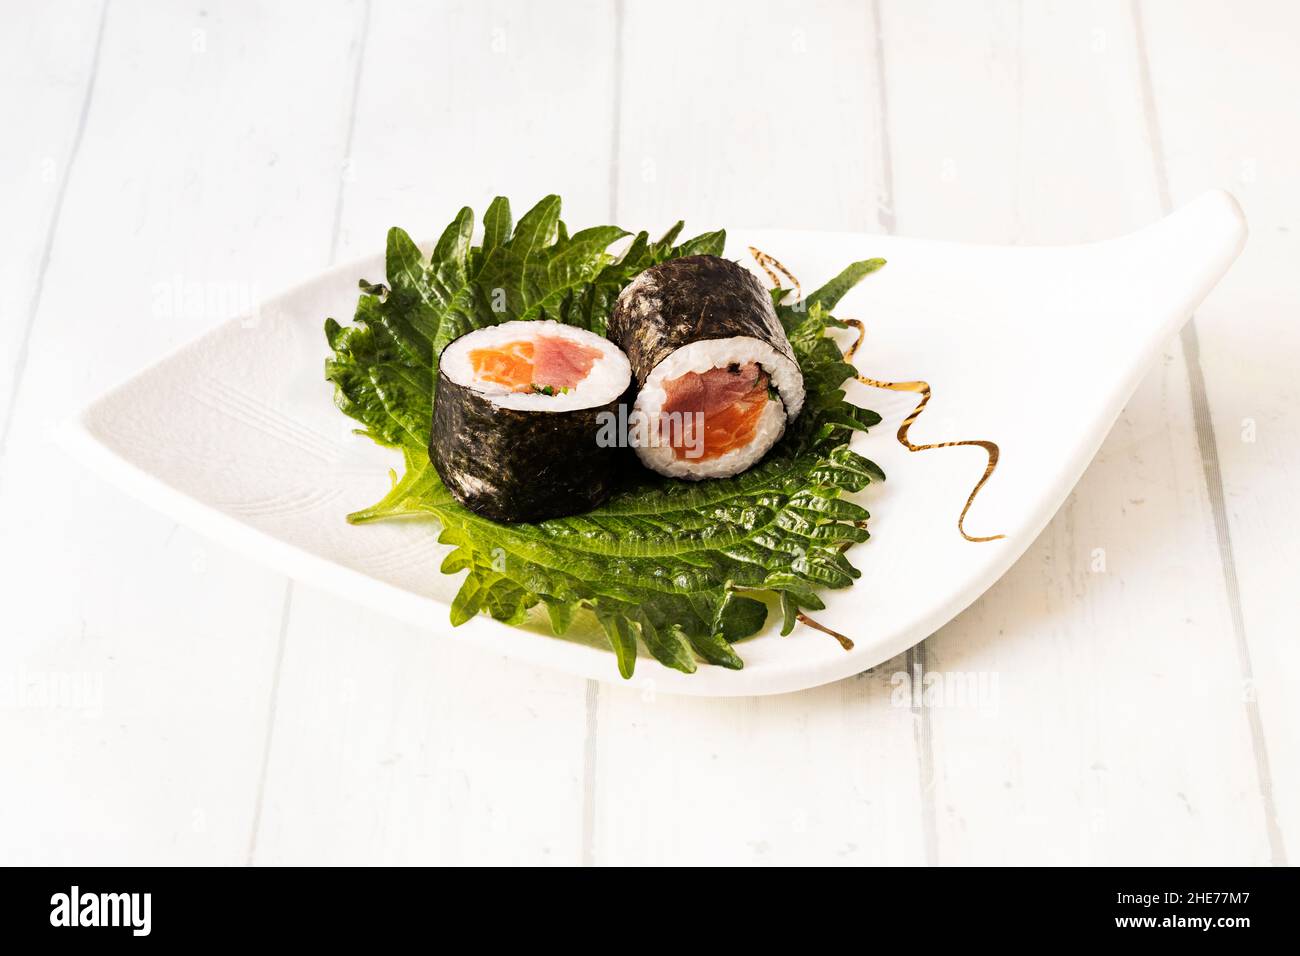 Super roulés maki de thon rouge et saumon norvégien avec riz blanc et algue nori Banque D'Images